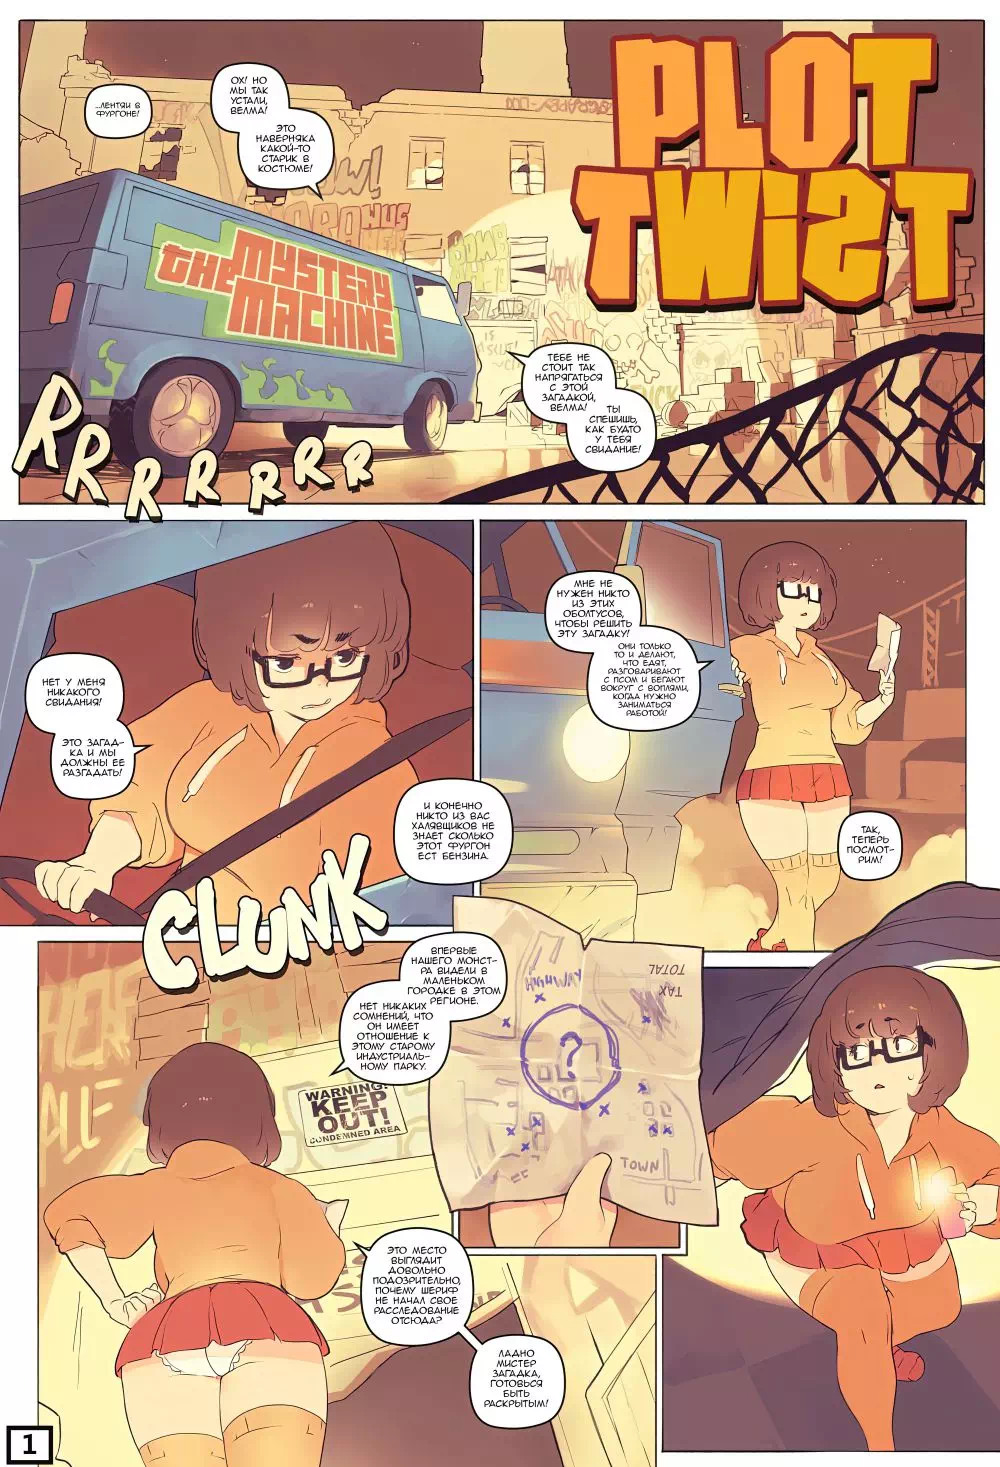 Скуби-Ду Velma и Дафна групповой секс - порно комикс